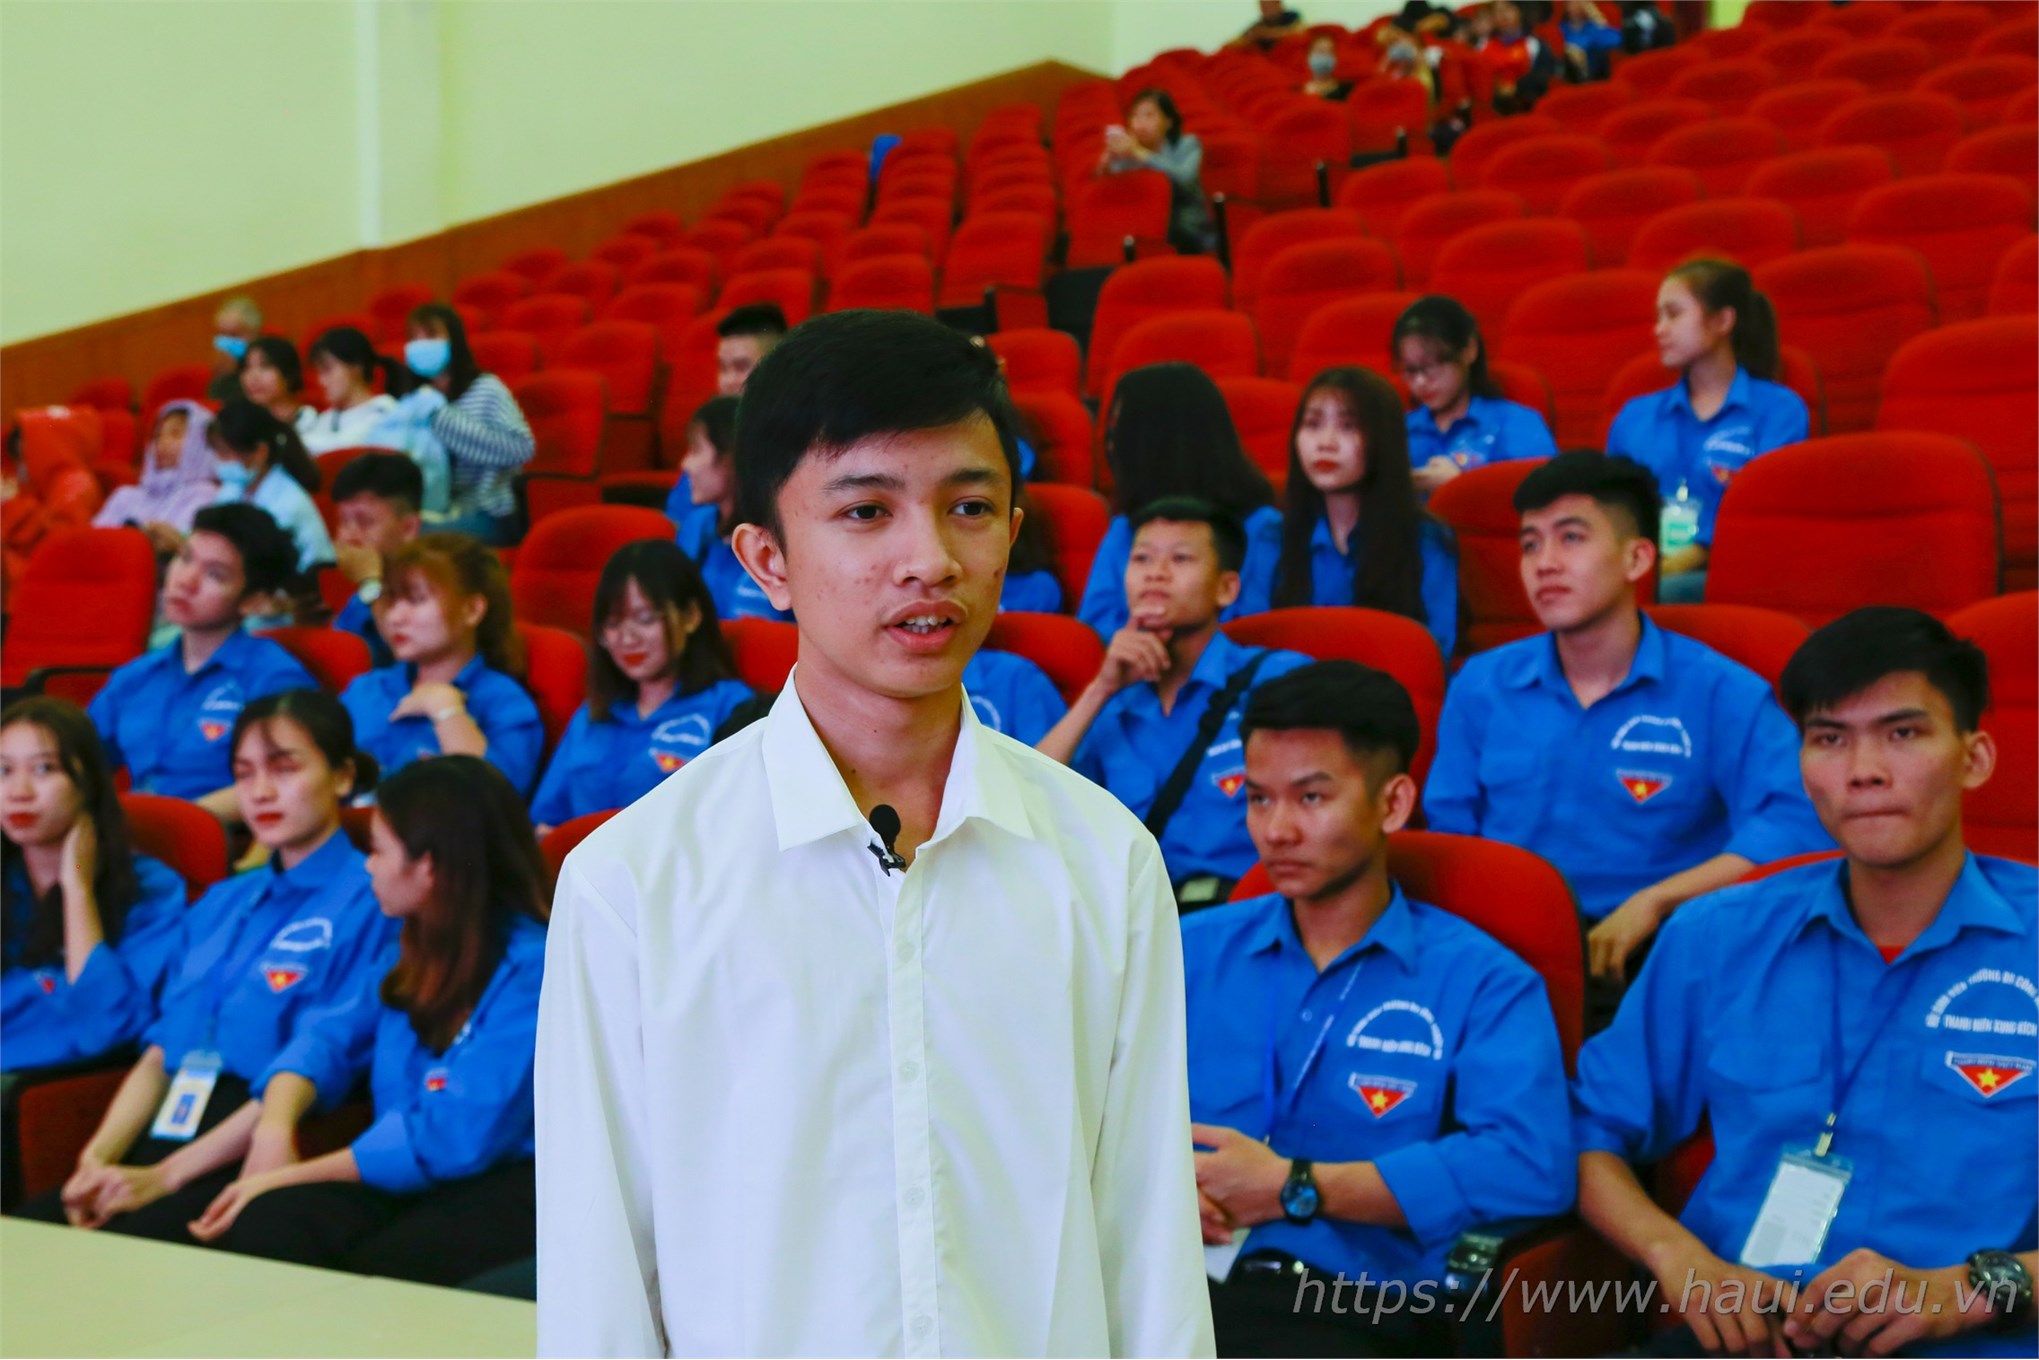 Tân thủ khoa Đại học Công nghiệp Hà Nội đạt 29,3 điểm